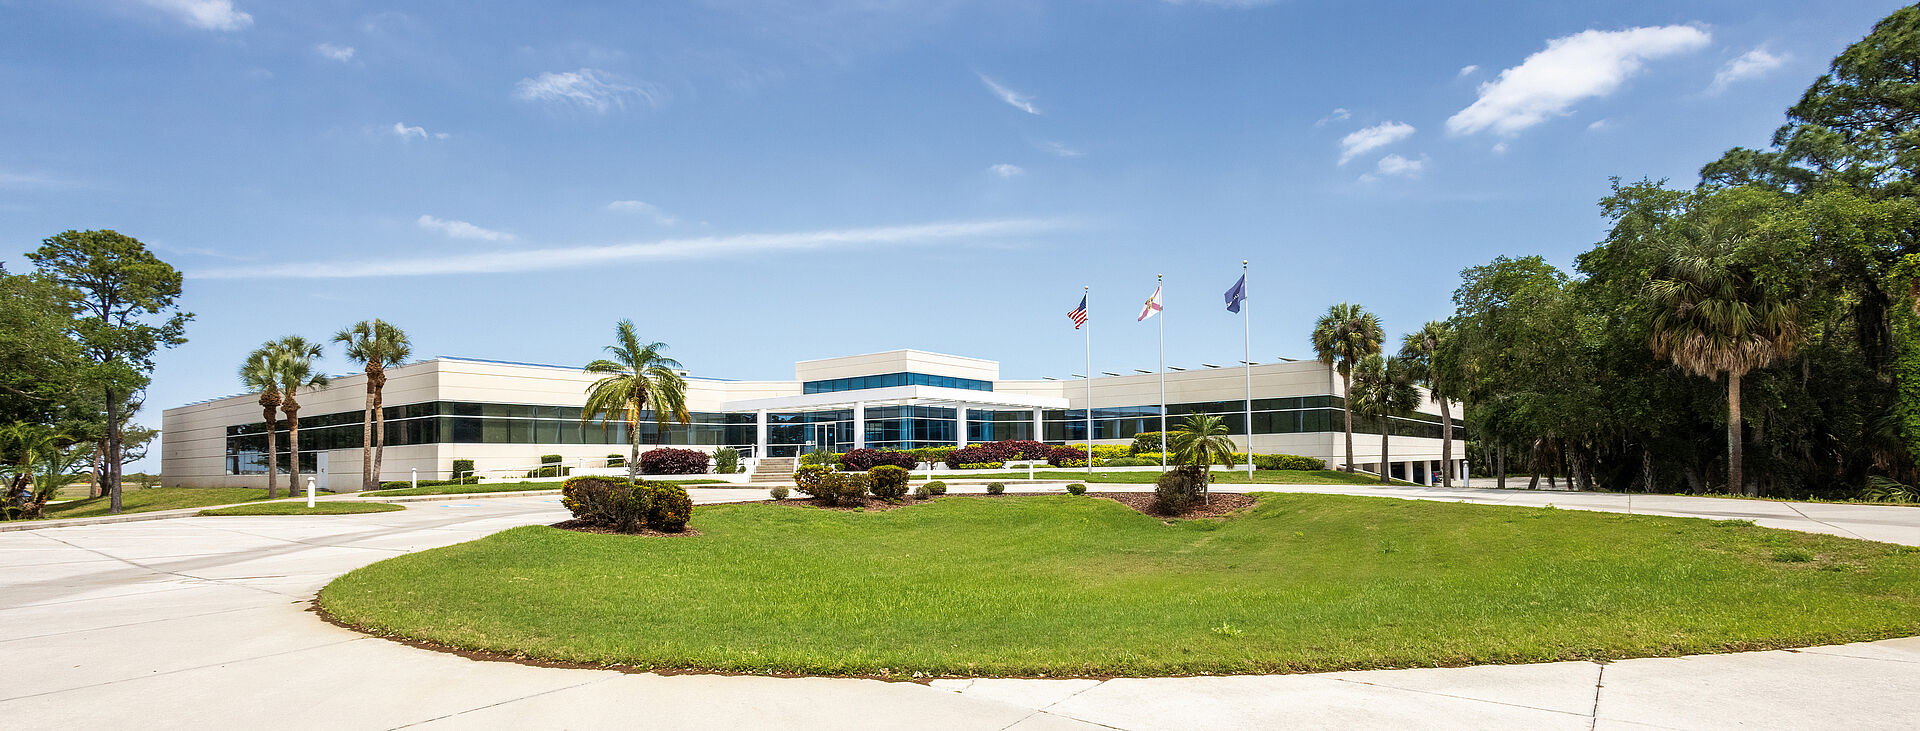 Gebäude von FAULHABER MICROMO LLC, Clearwater, FL